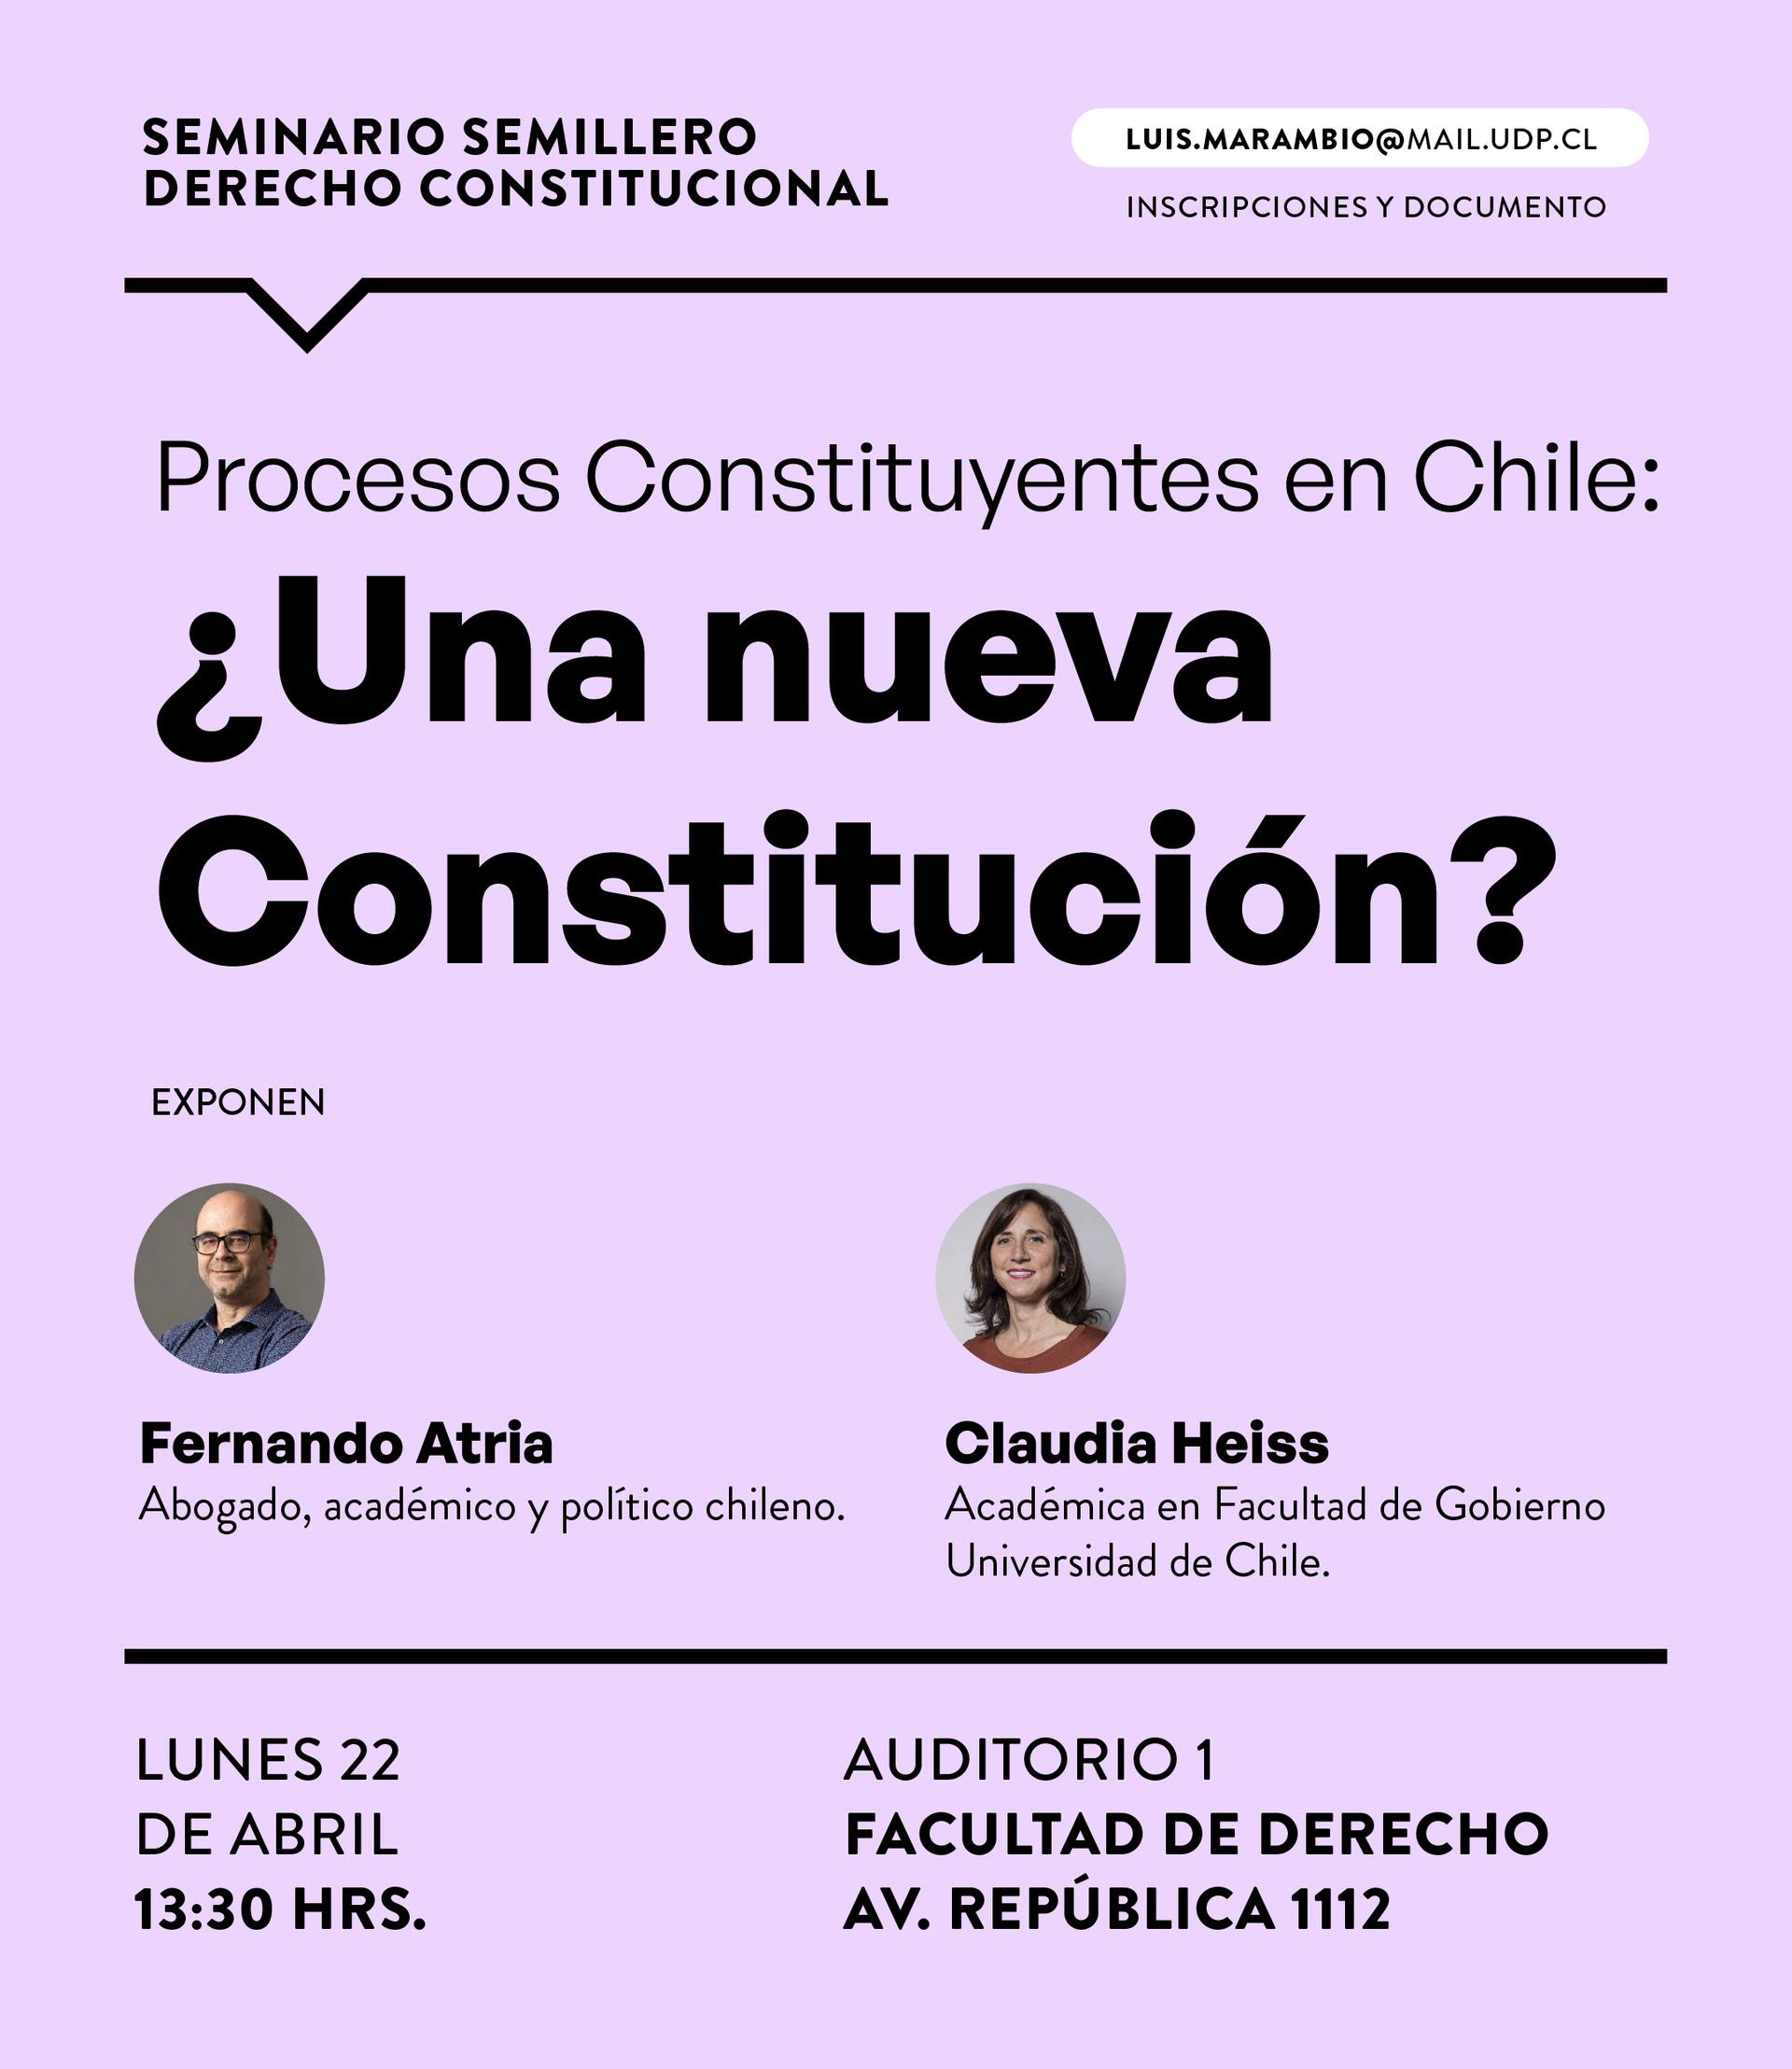 Seminario Semillero Derecho Constitucional: Procesos Constituyentes en Chile ¿Una nueva Constitución?